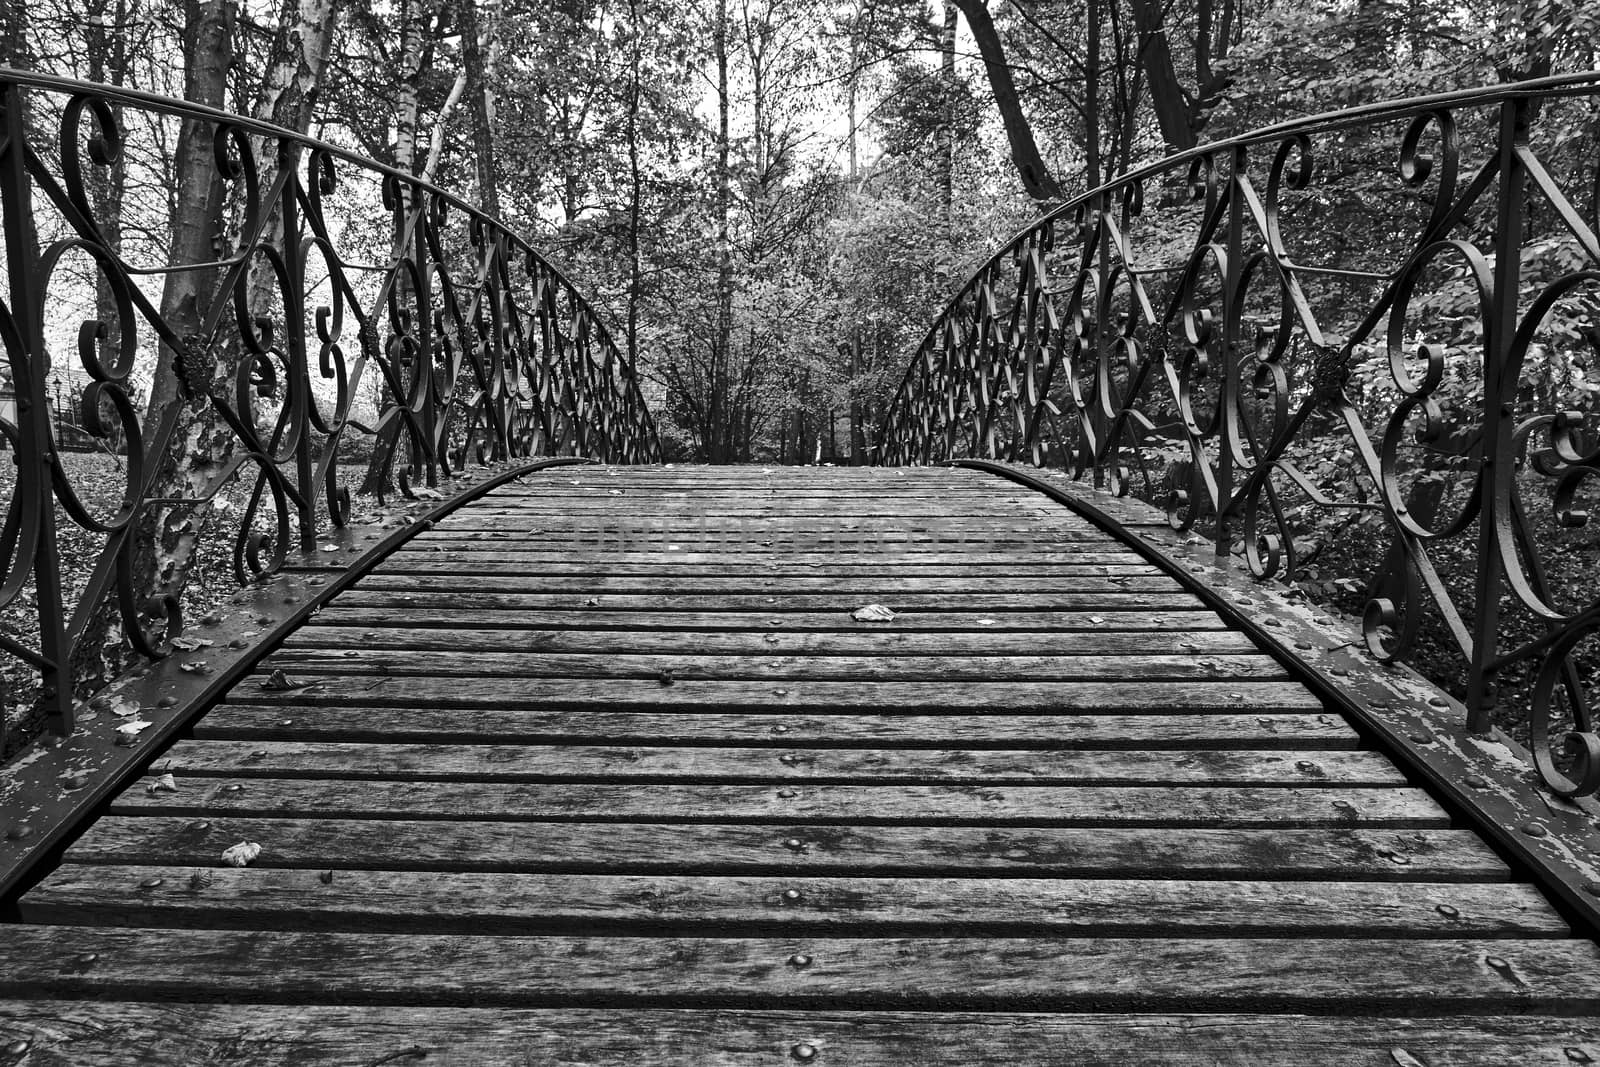 Wooden pedestrian bridge in a park in Poland, monochrome